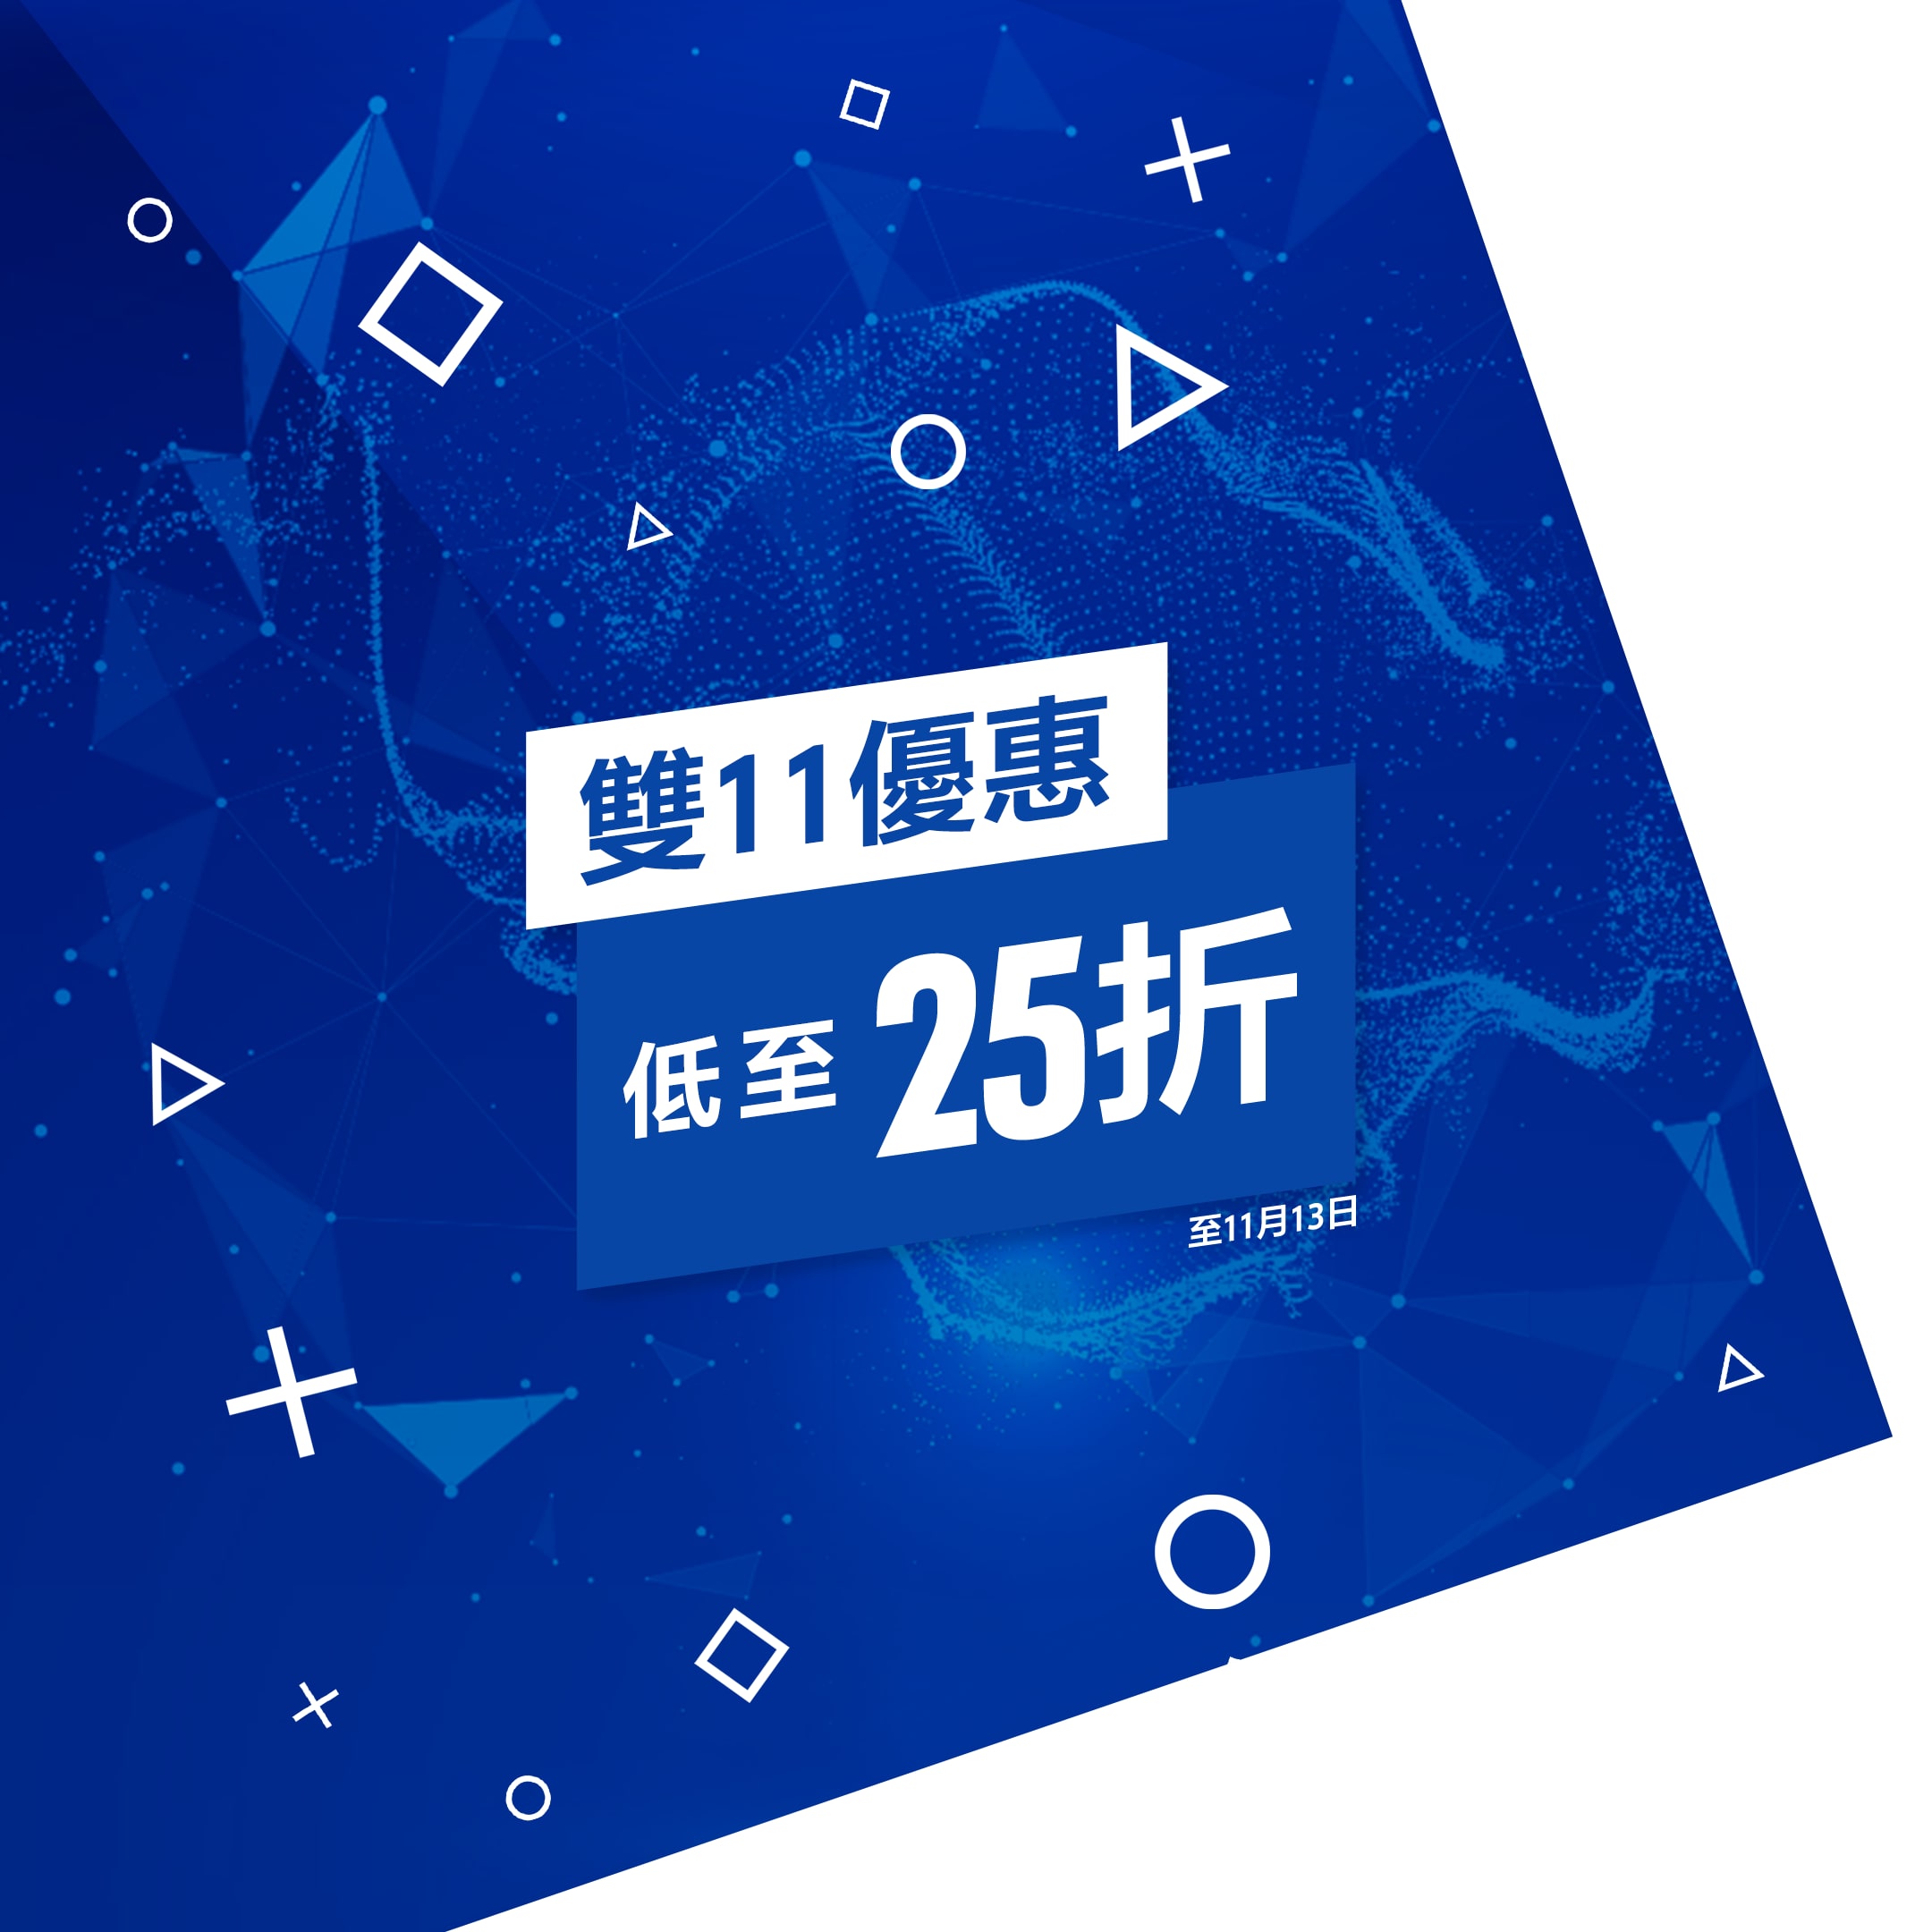 艾爾登法環 PS4 & PS5 (簡體中文, 韓文, 泰文, 繁體中文)